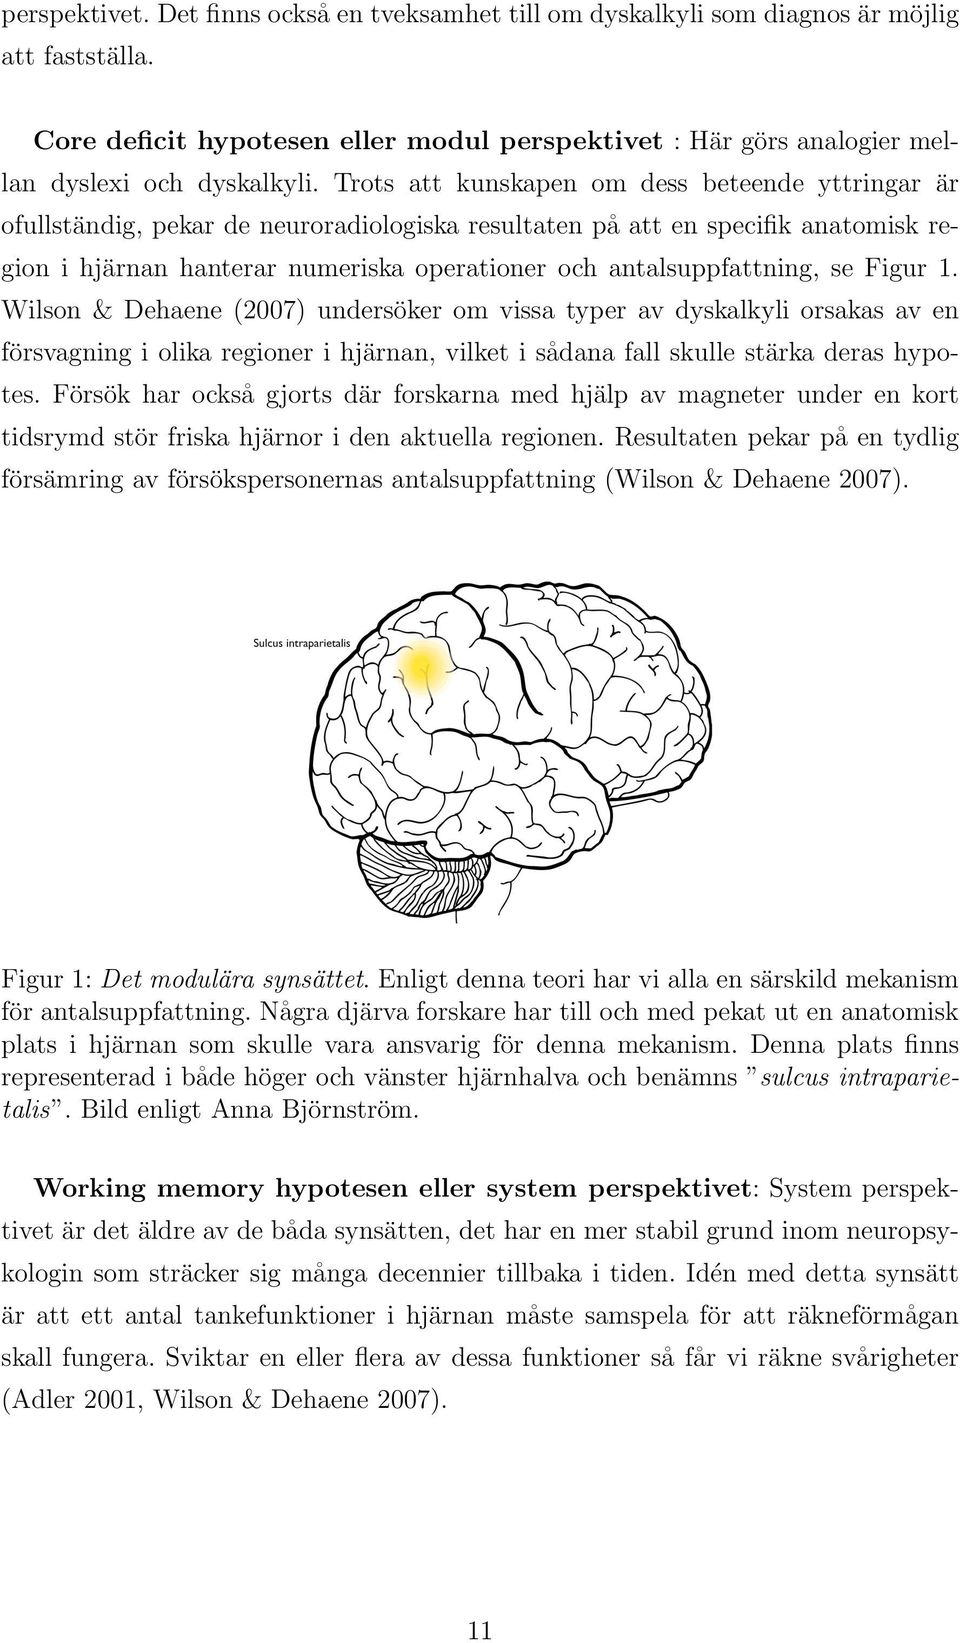 antalsuppfattning, se Figur 1. Wilson & Dehaene (2007) undersöker om vissa typer av dyskalkyli orsakas av en försvagning i olika regioner i hjärnan, vilket i sådana fall skulle stärka deras hypotes.